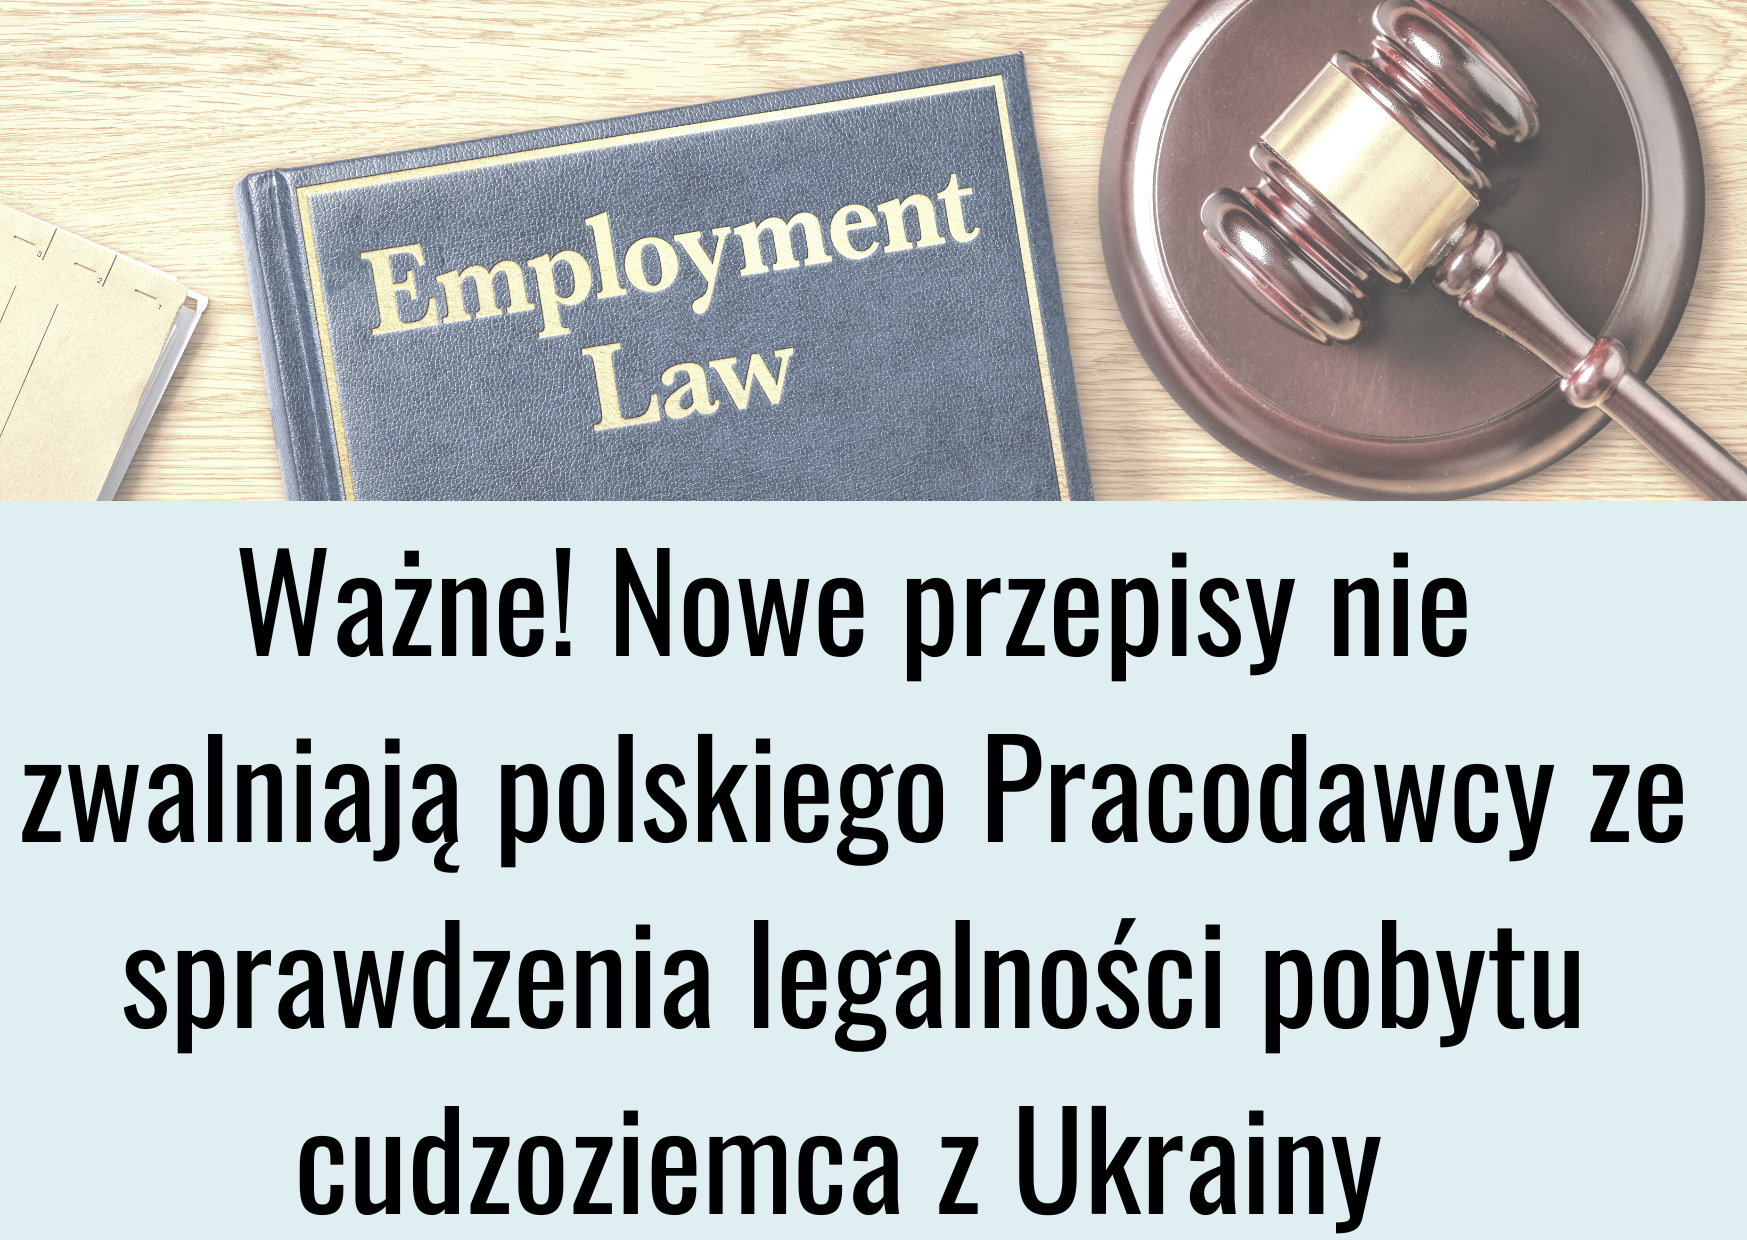 Dowiedz się, czy obywatela Ukrainy można zatrudnić na podstawie umowy, bez uzyskania żadnych pozwoleń.